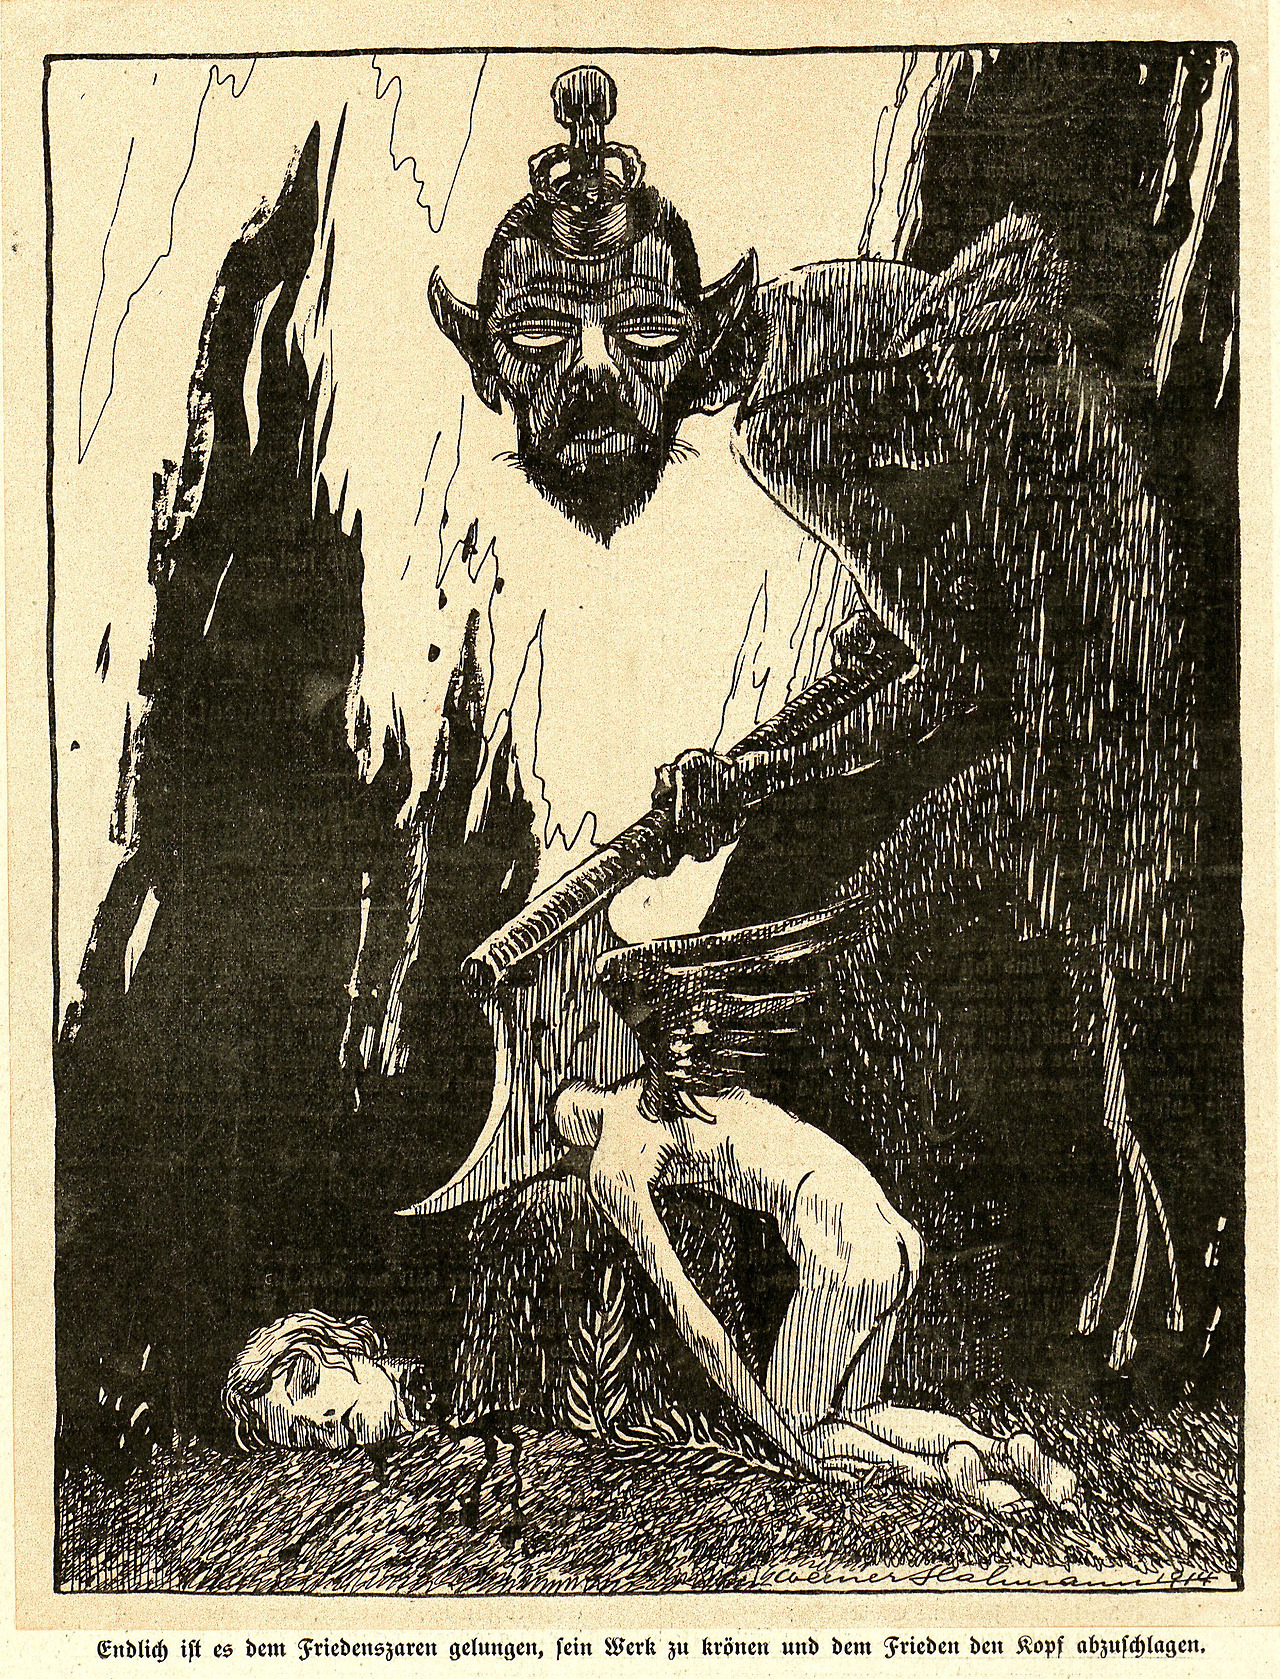 Kladderadatsch, Illustration by Werner Hahmann, August, 1914